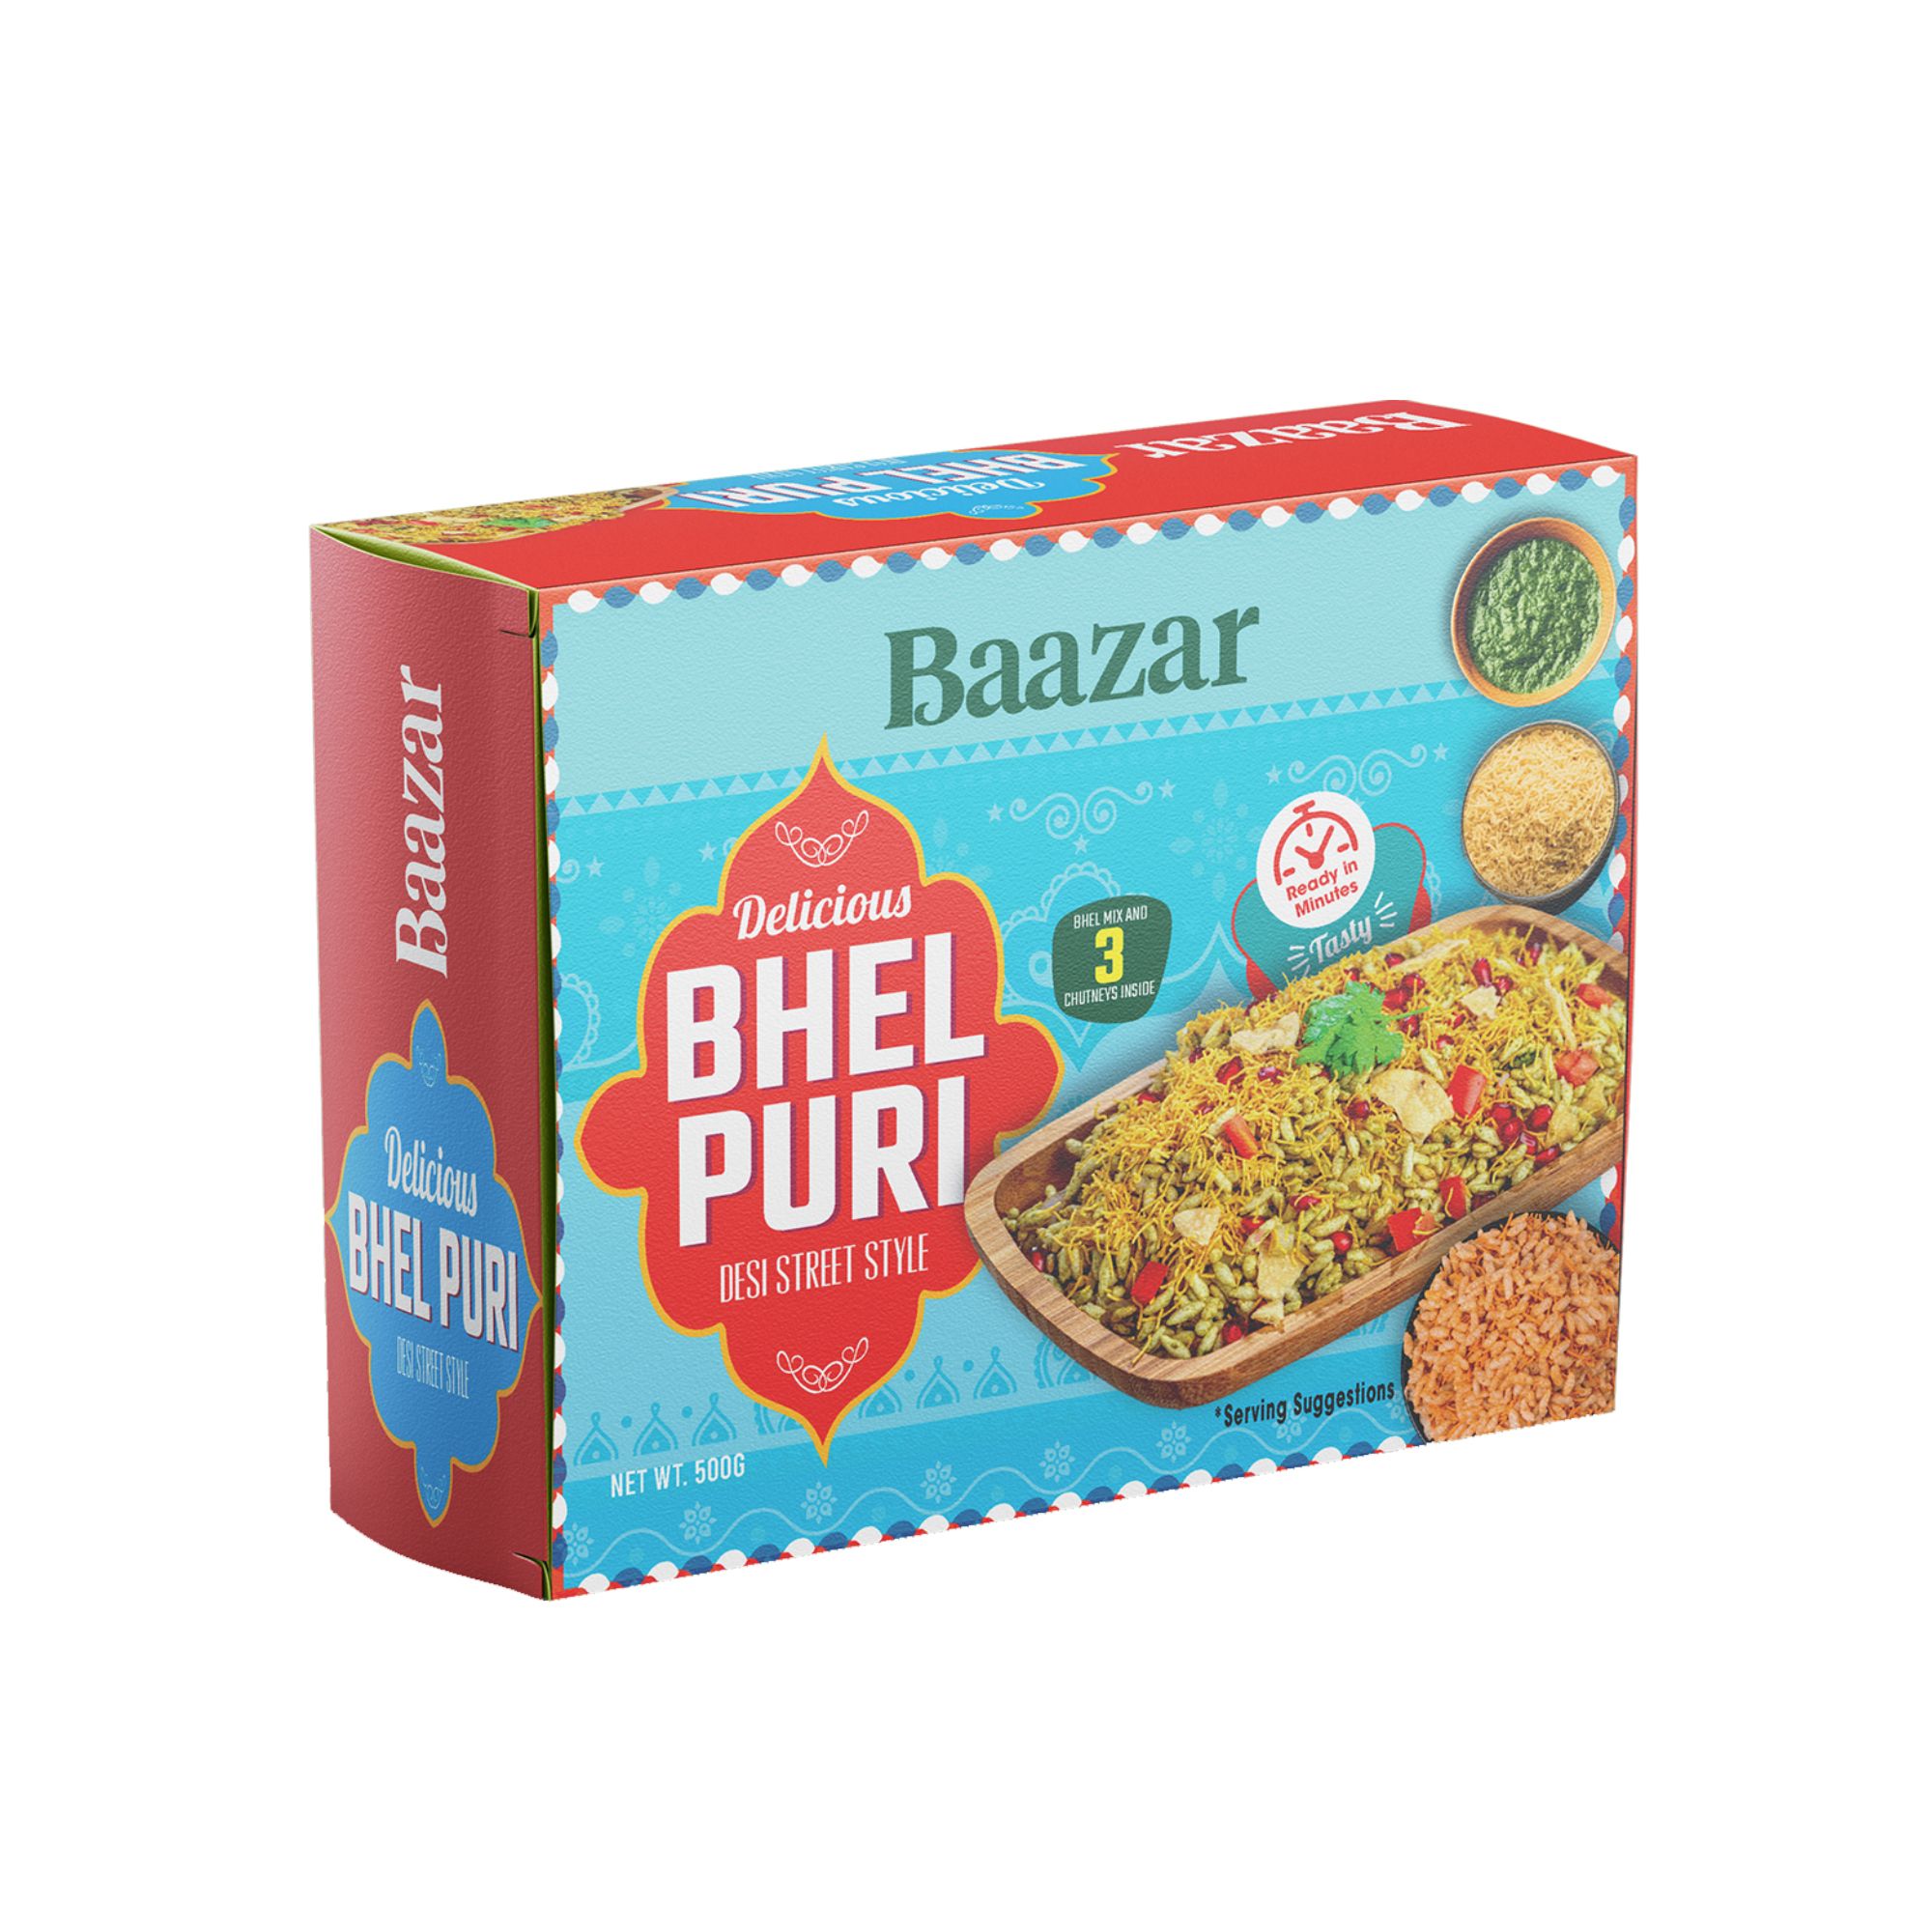 BAAZAR Bhel Puri Box 500g